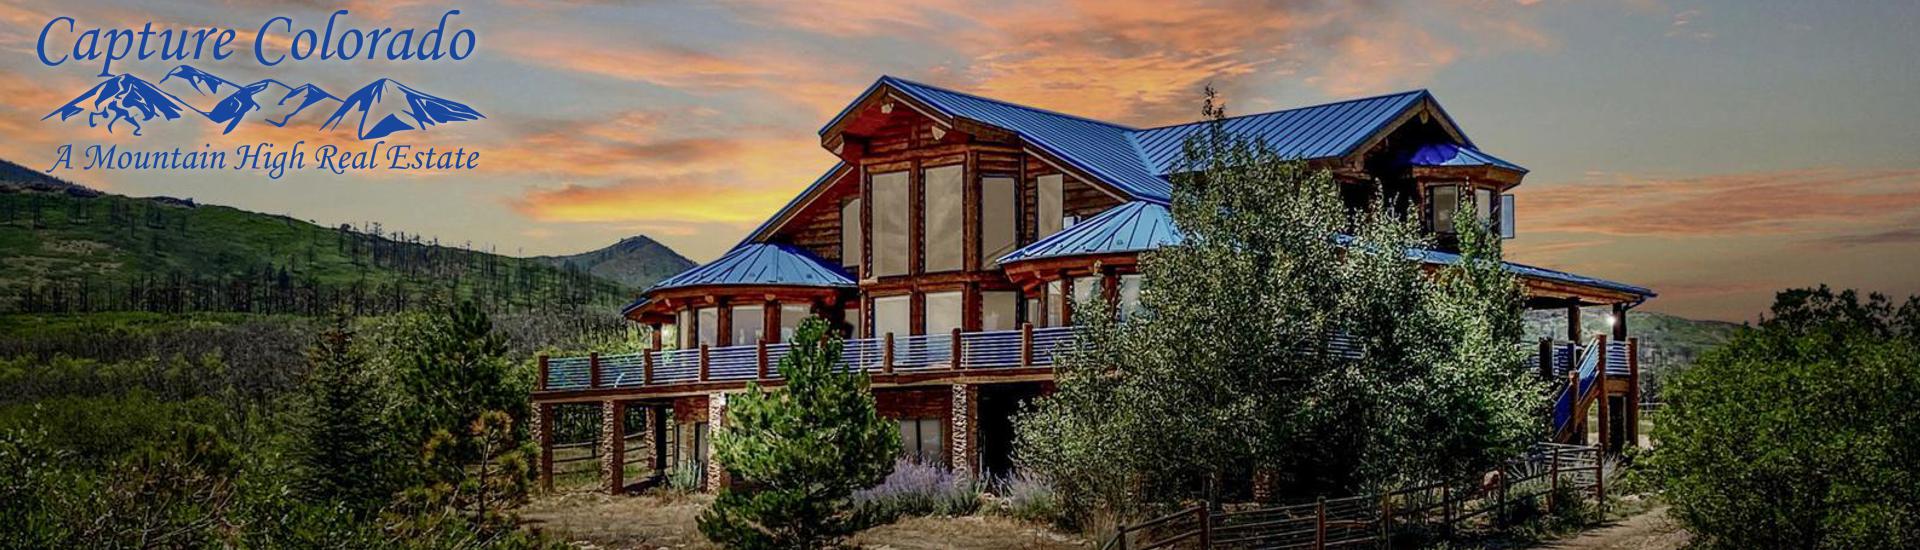 Properties for Sale in Rye, Colorado City, Beulah, Pueblo and Southern Colorado